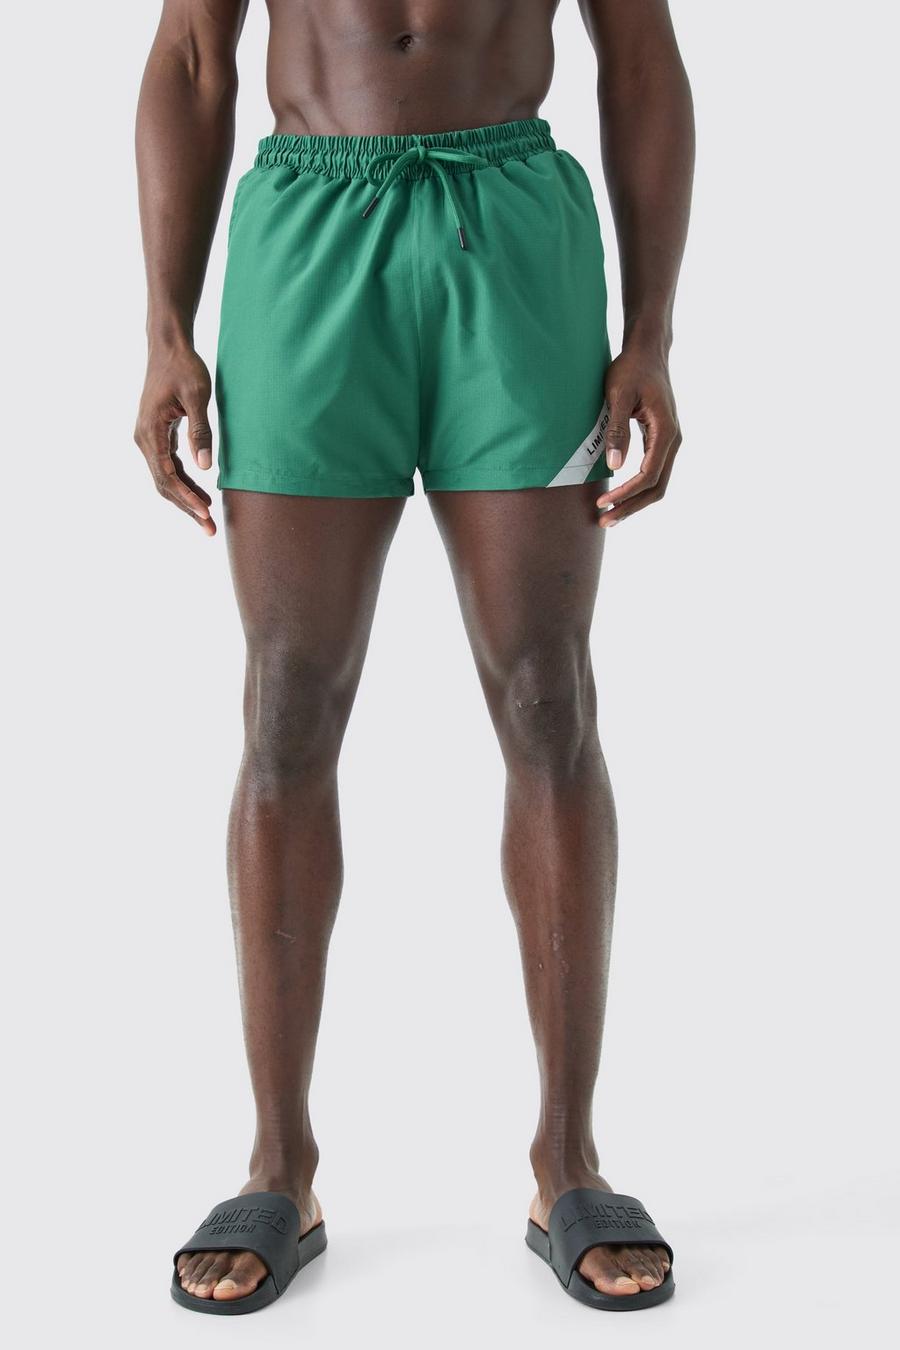 Costume a pantaloncino corto in nylon ripstop Limited Edition, Khaki